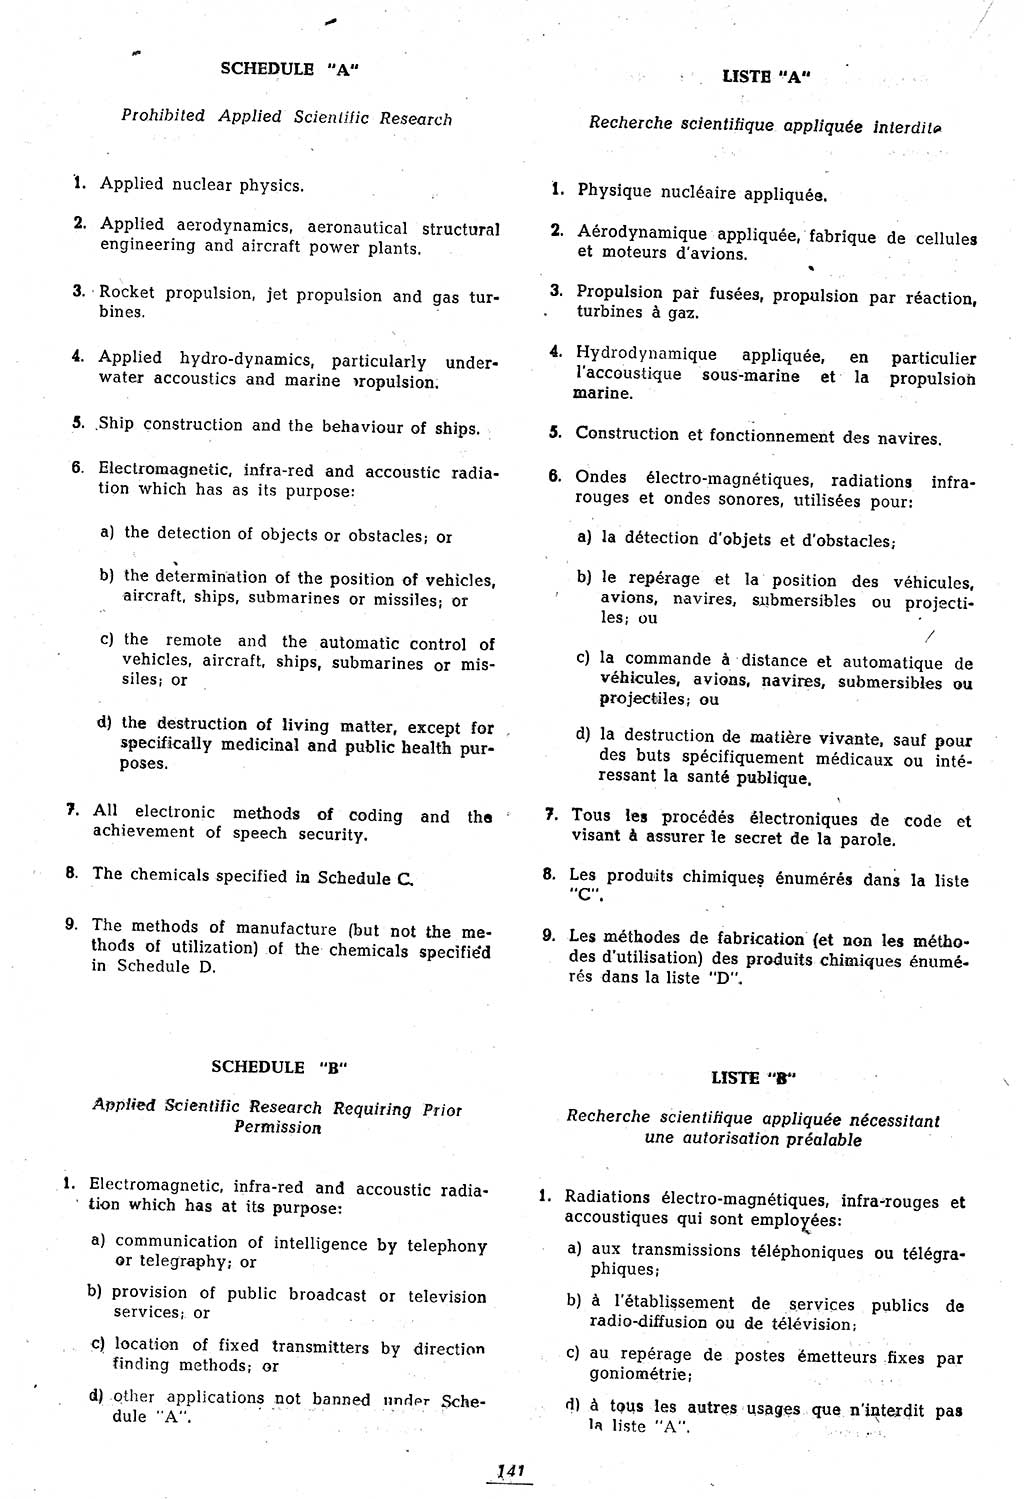 Amtsblatt des Kontrollrats (ABlKR) in Deutschland 1946, Seite 141/1 (ABlKR Dtl. 1946, S. 141/1)